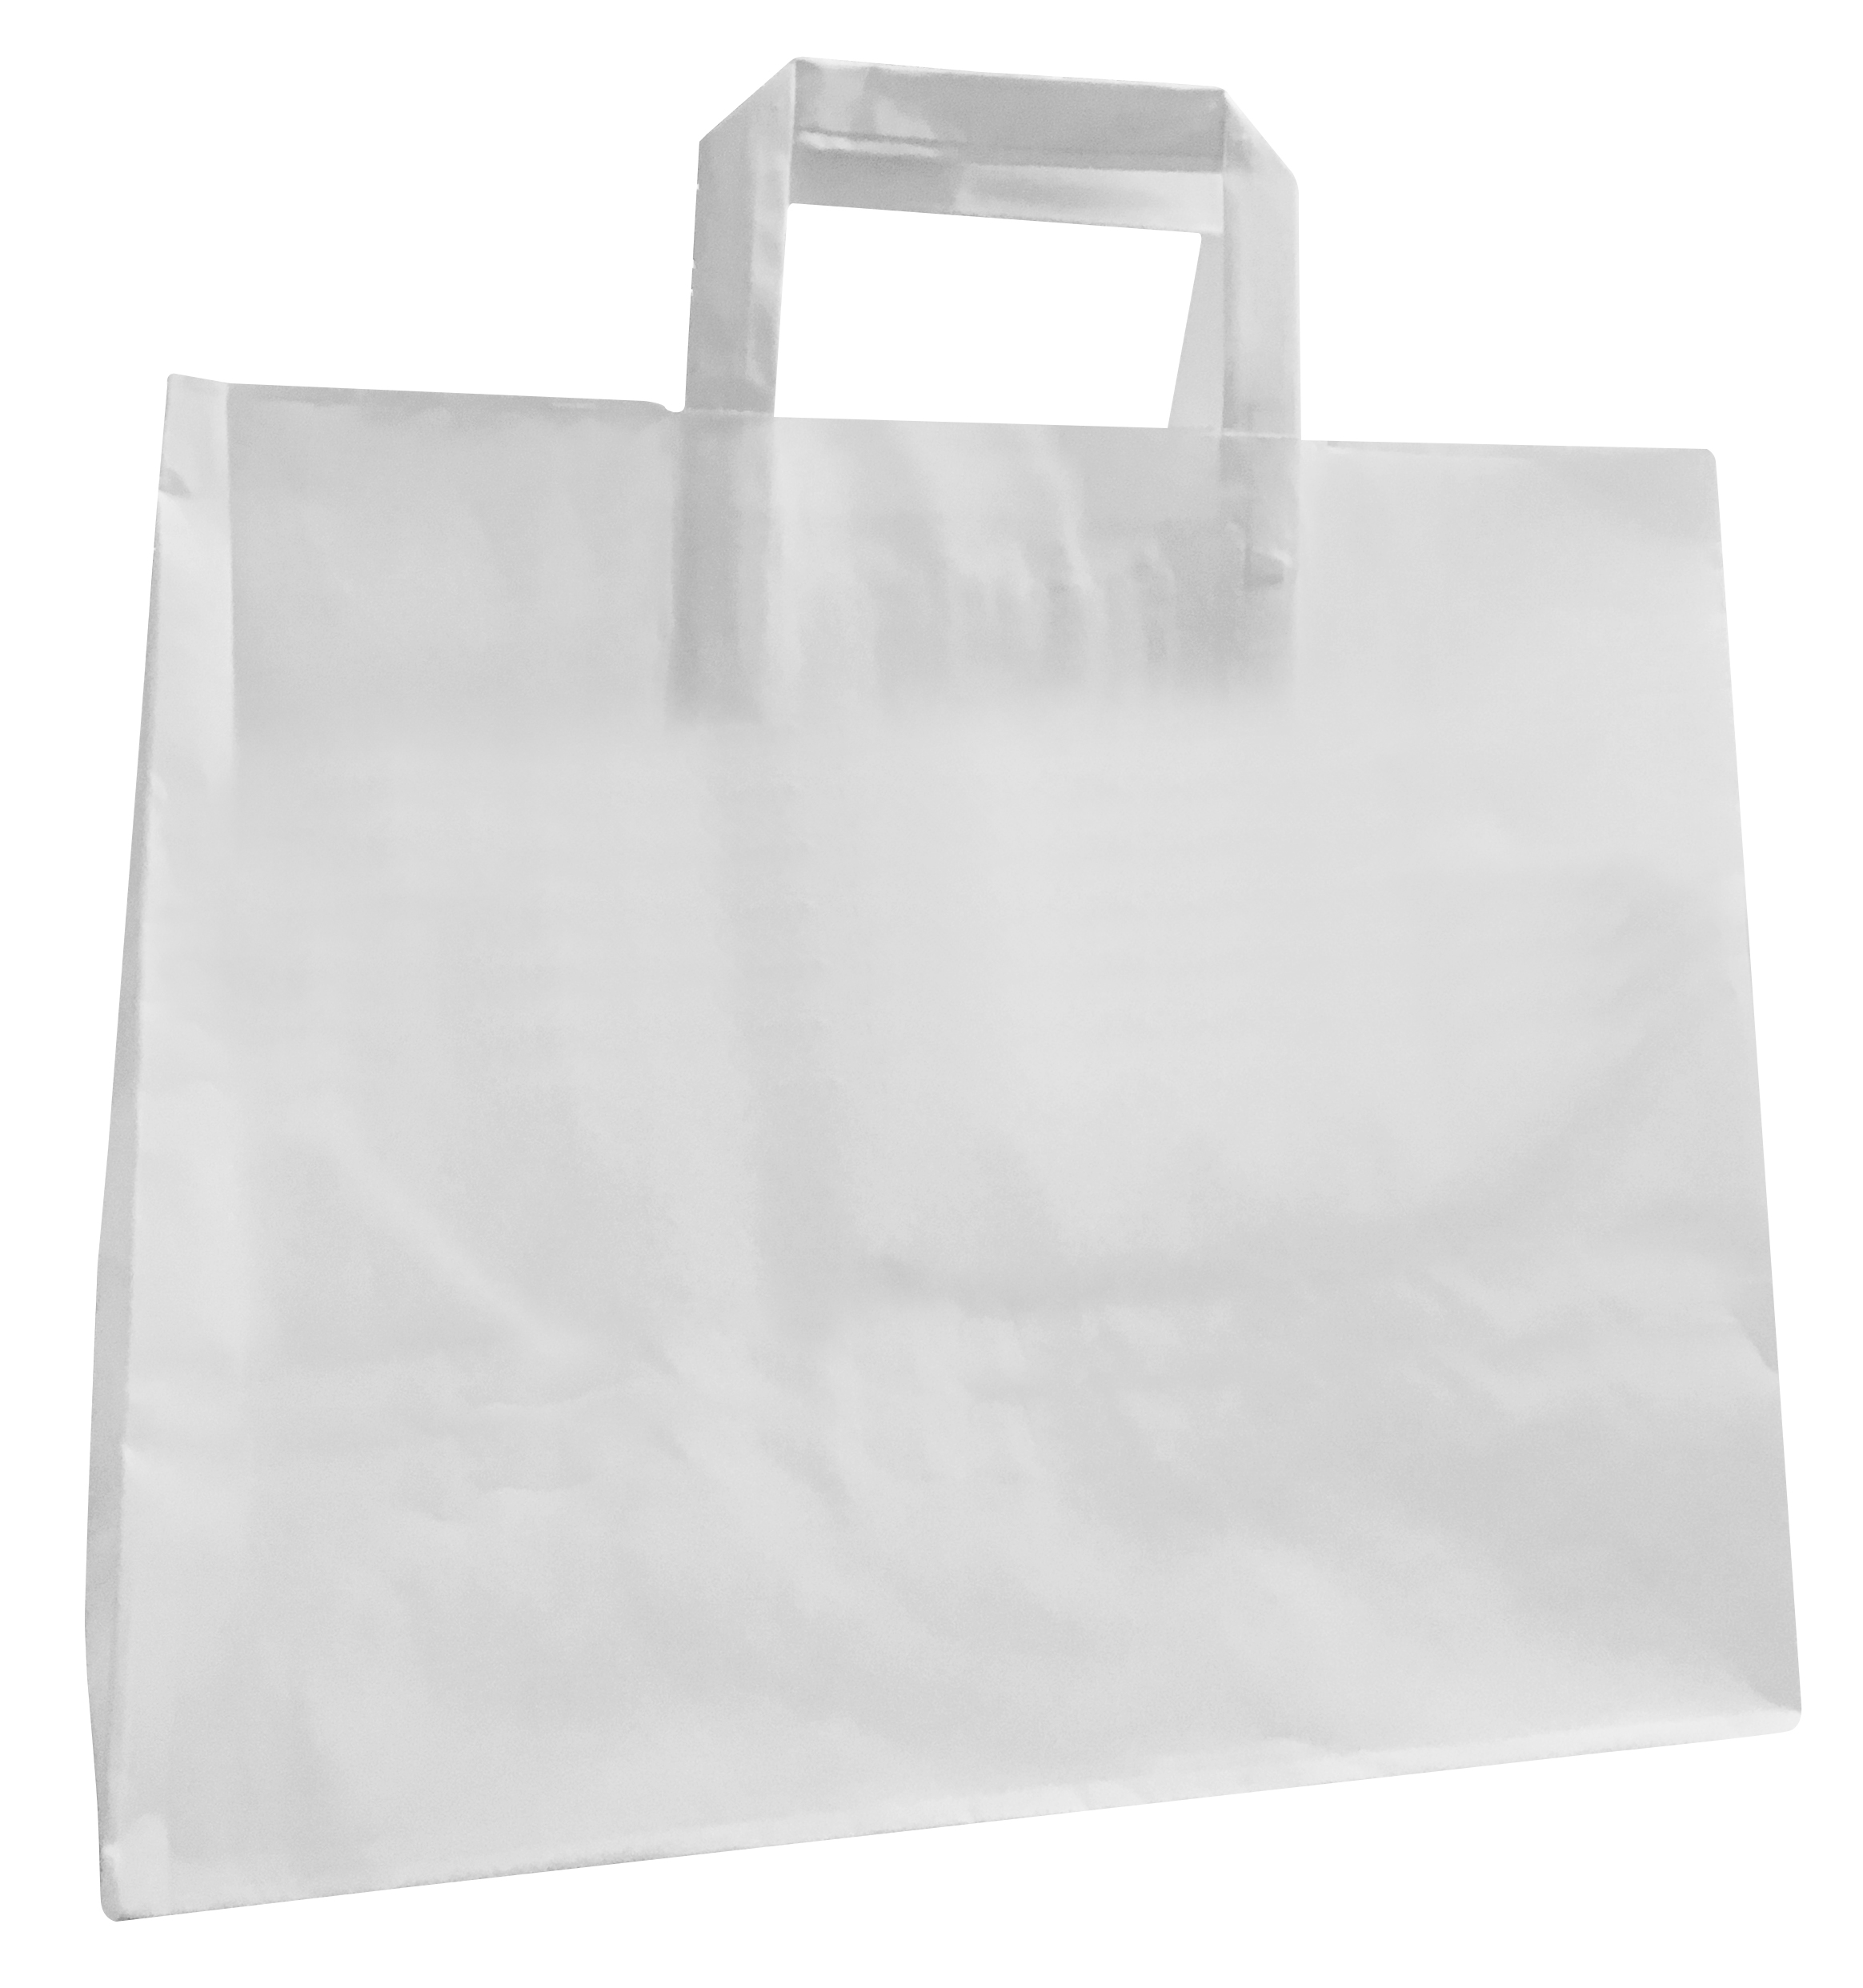 Karakteriseren Zegenen voelen Papieren tas L wit, 32 x 16 x 27 cm | Bechershop NL